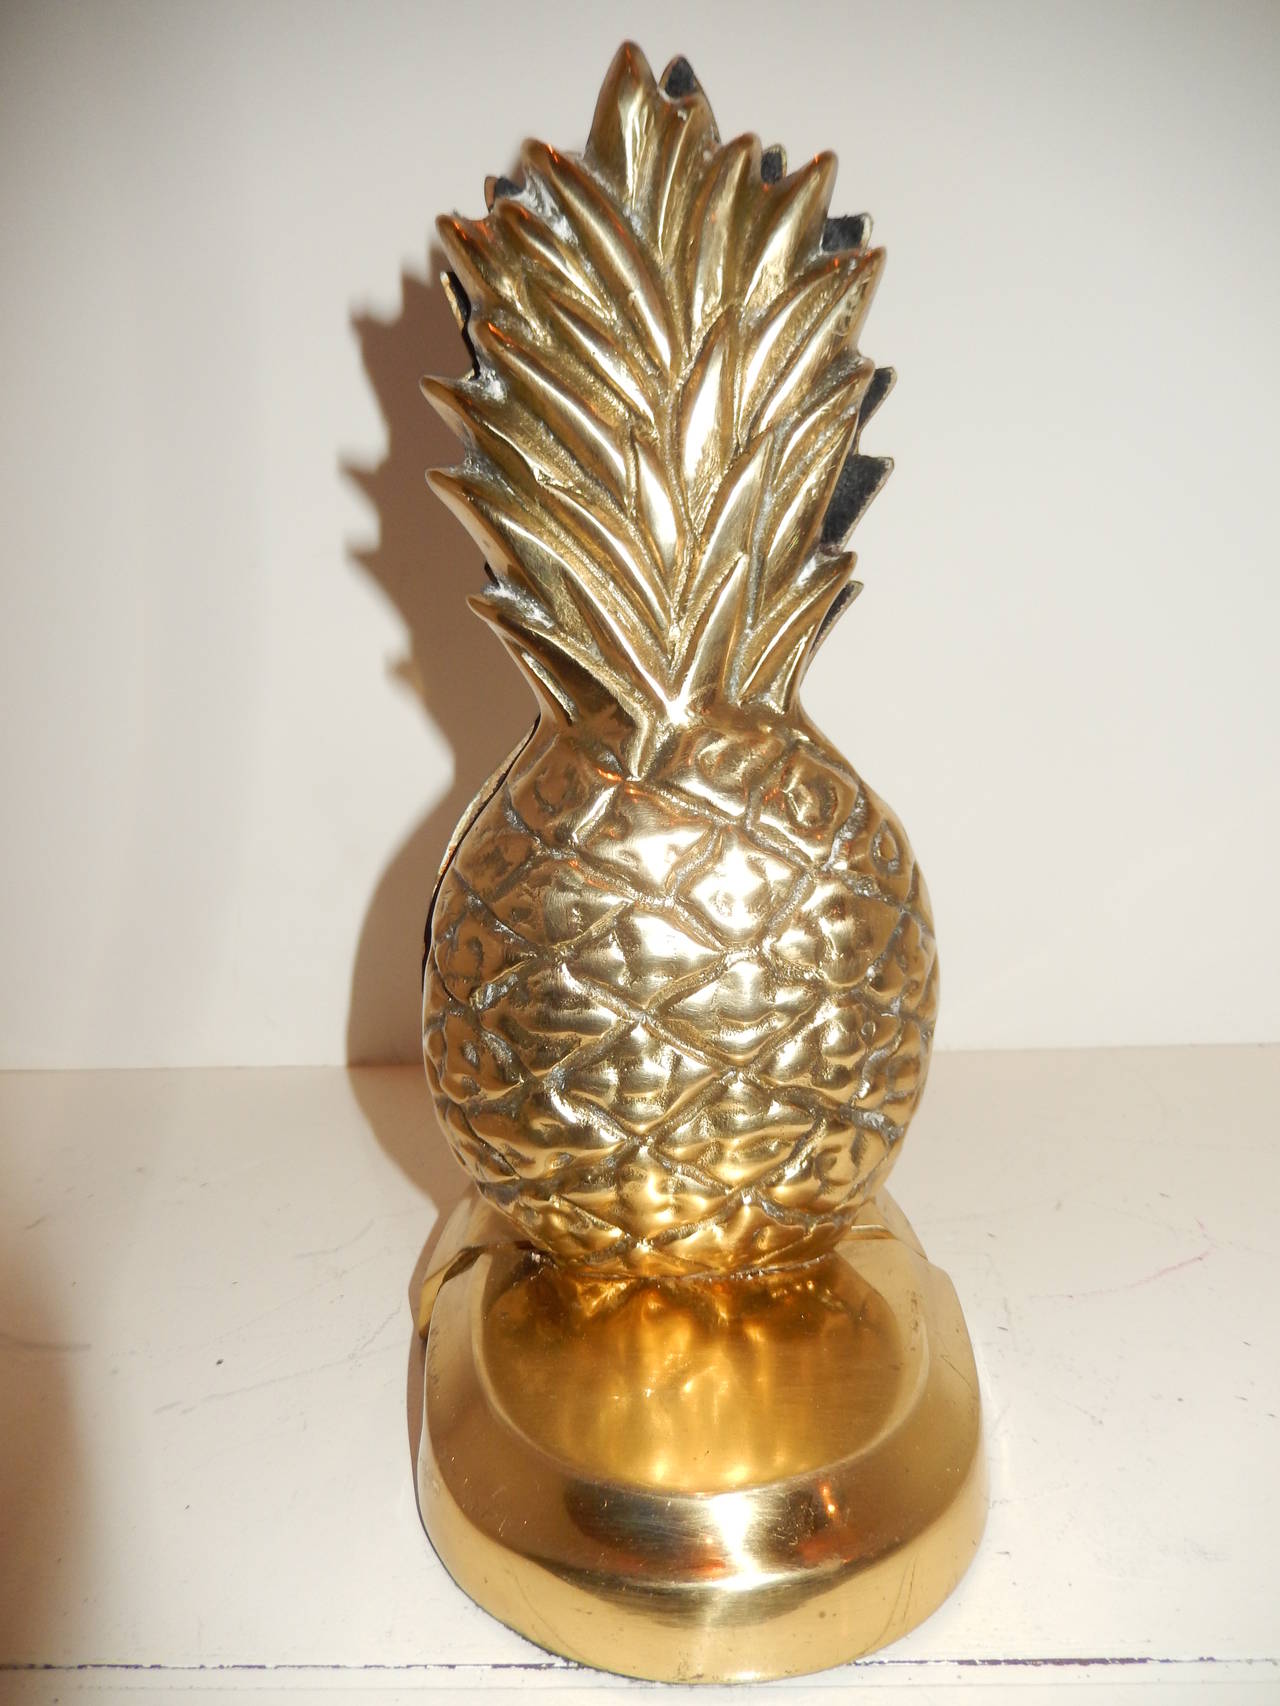 Cast Pair of Sculptural Art Deco Pineapples, Brass Bookends